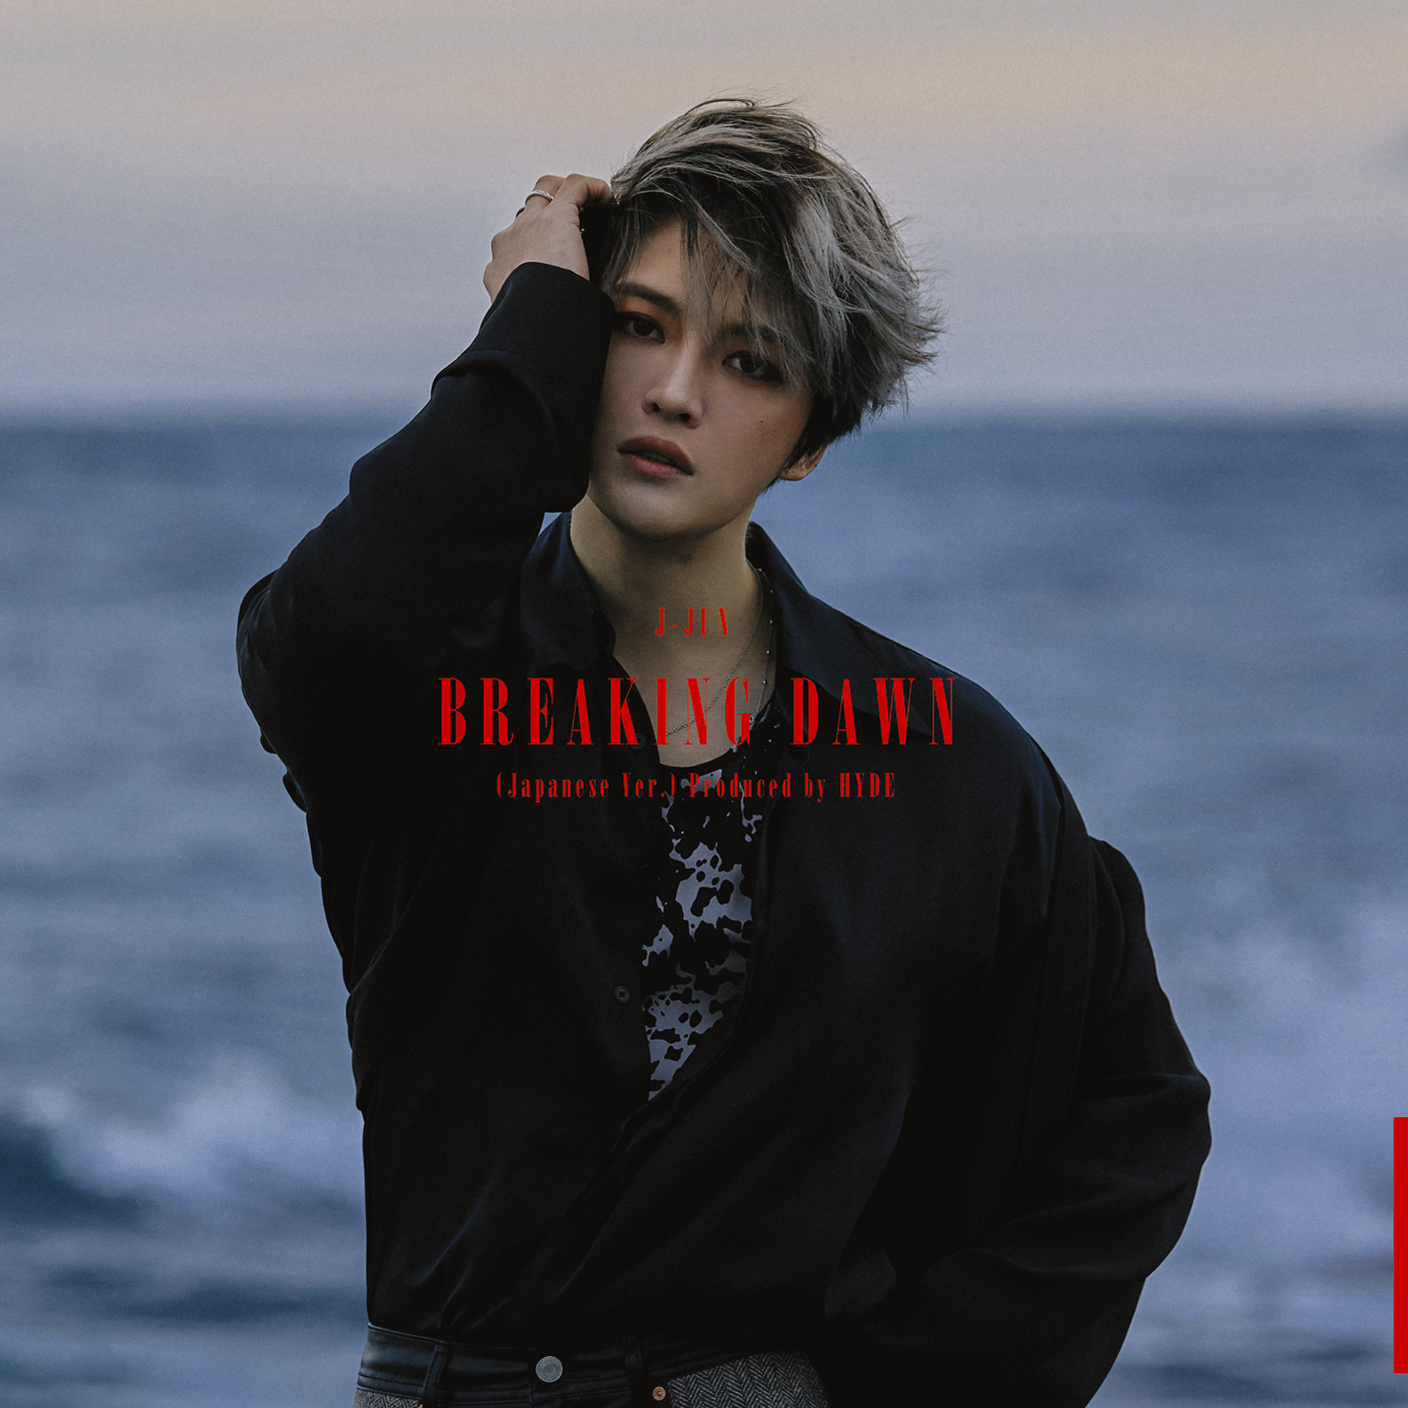 ジェジュン Hydeプロデュースによる楽曲 Breaking Dawn Japanese Ver Produced By Hyde をcdシングルとして3月31日発売 韓国 アジア